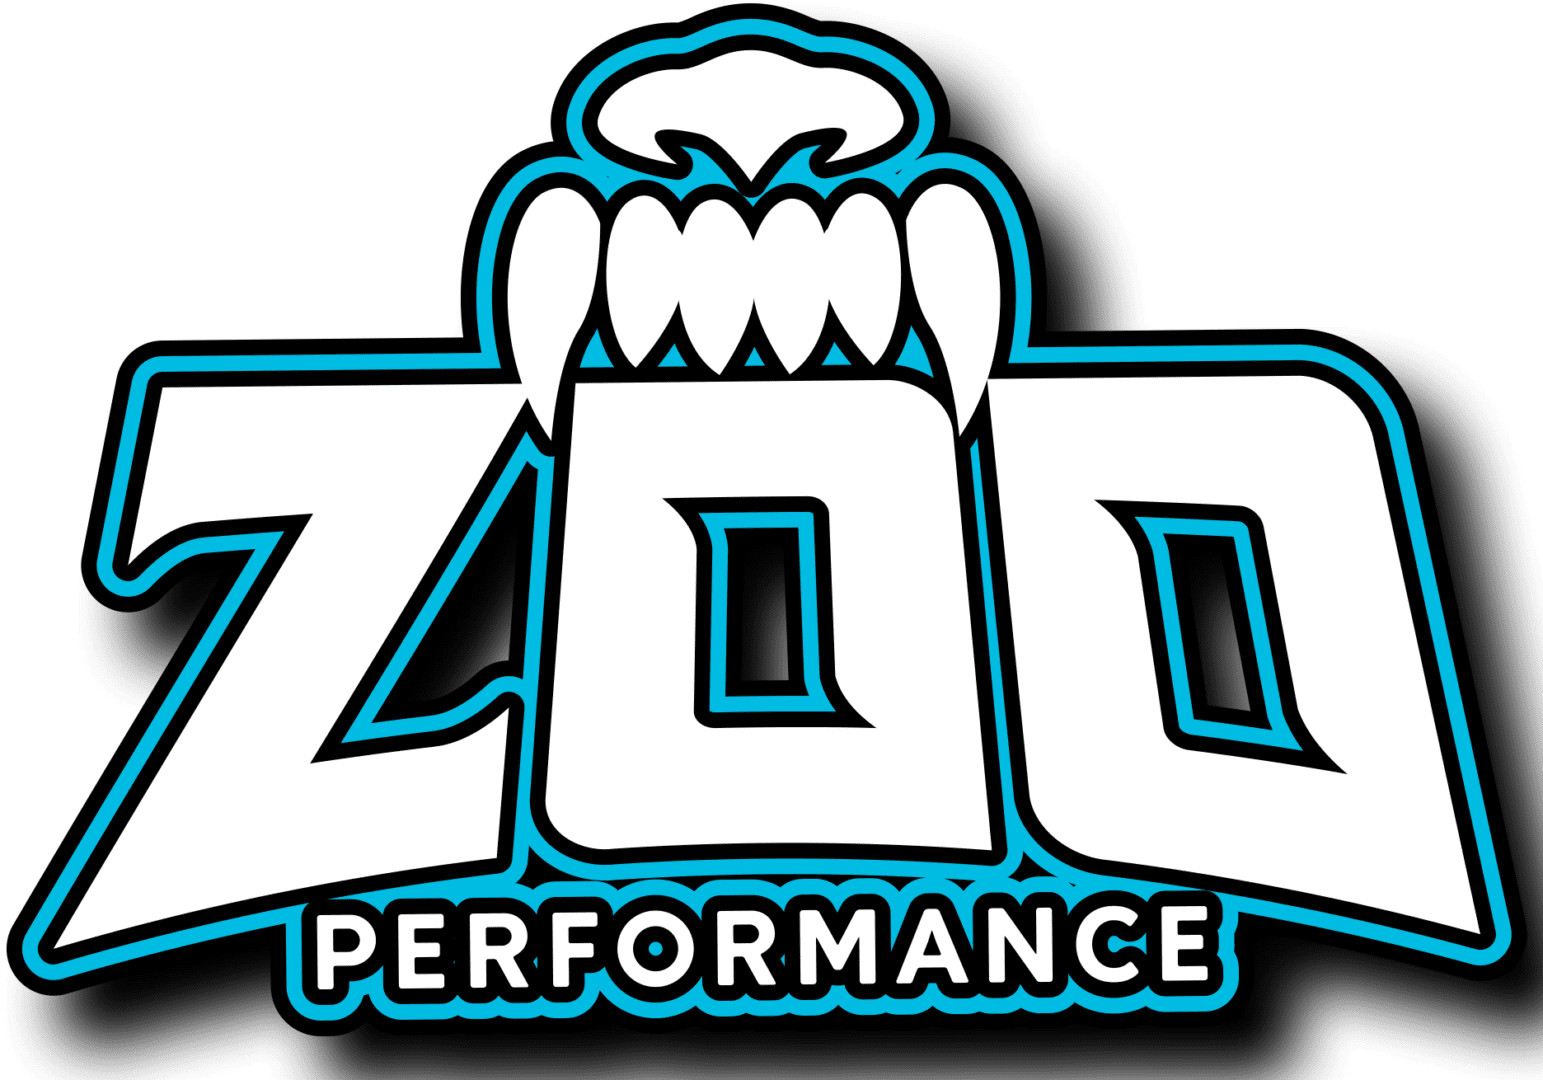 Zoo Performance Logo sponsor for Lyne Motorsport